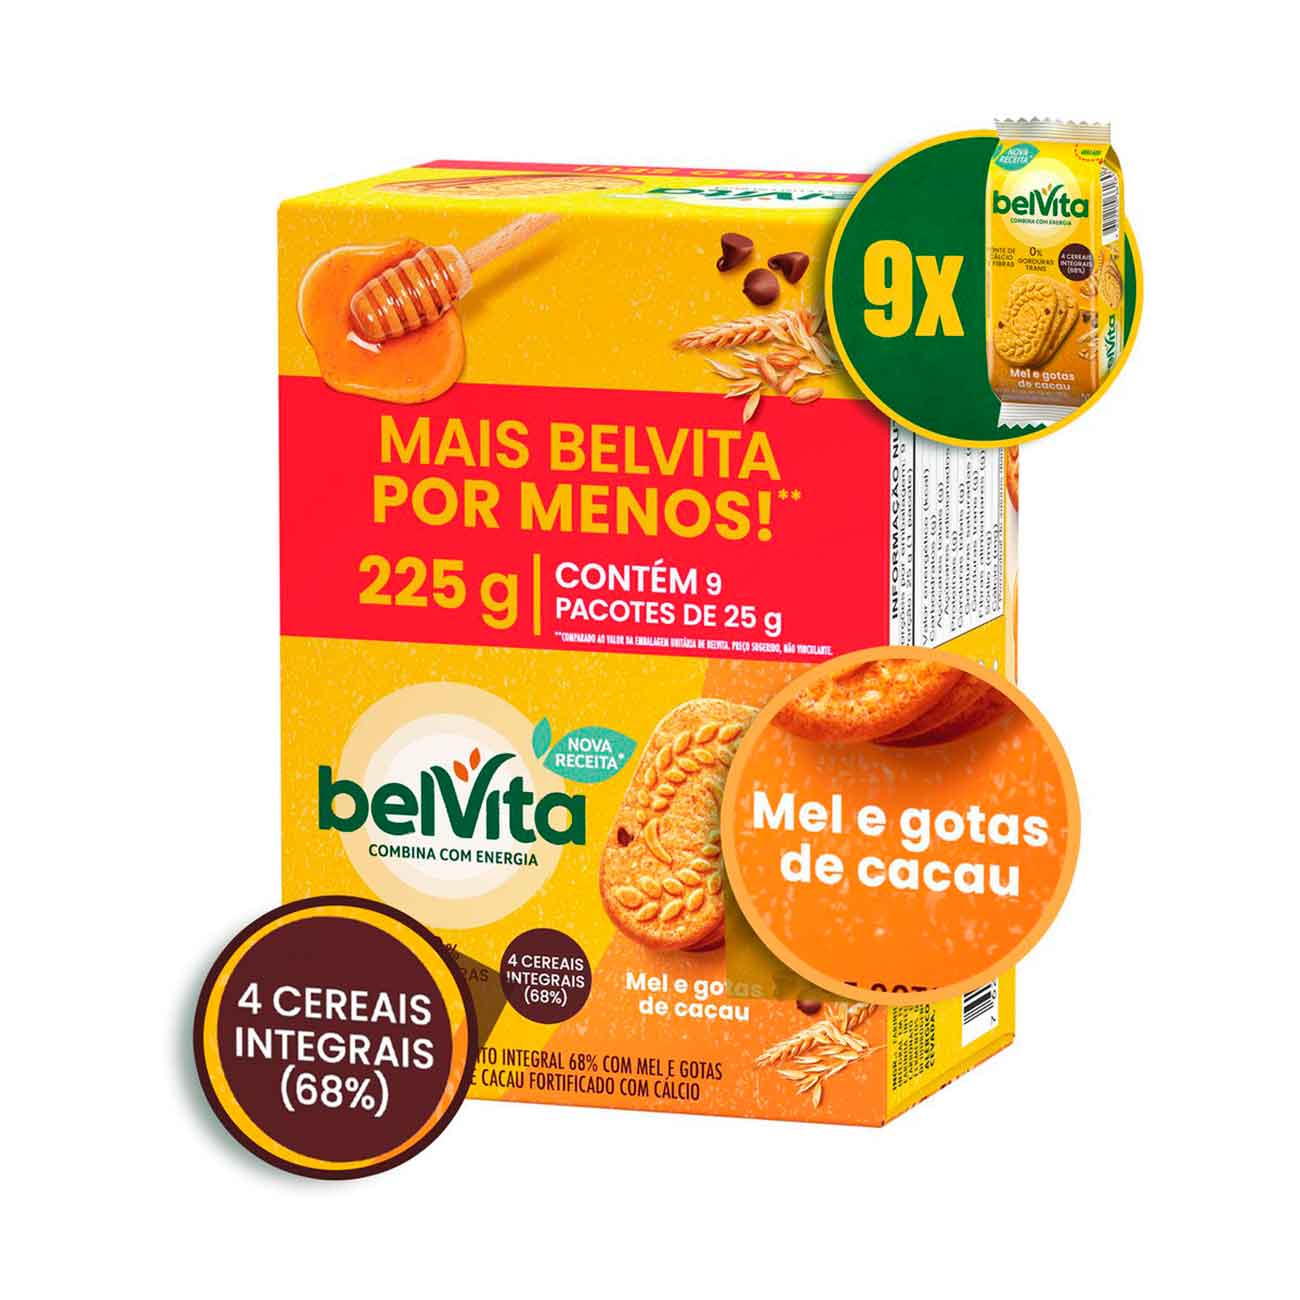 Biscoito Belvita Mel E Cacau Pack Econmico 225g com 9 Unidades de 25g